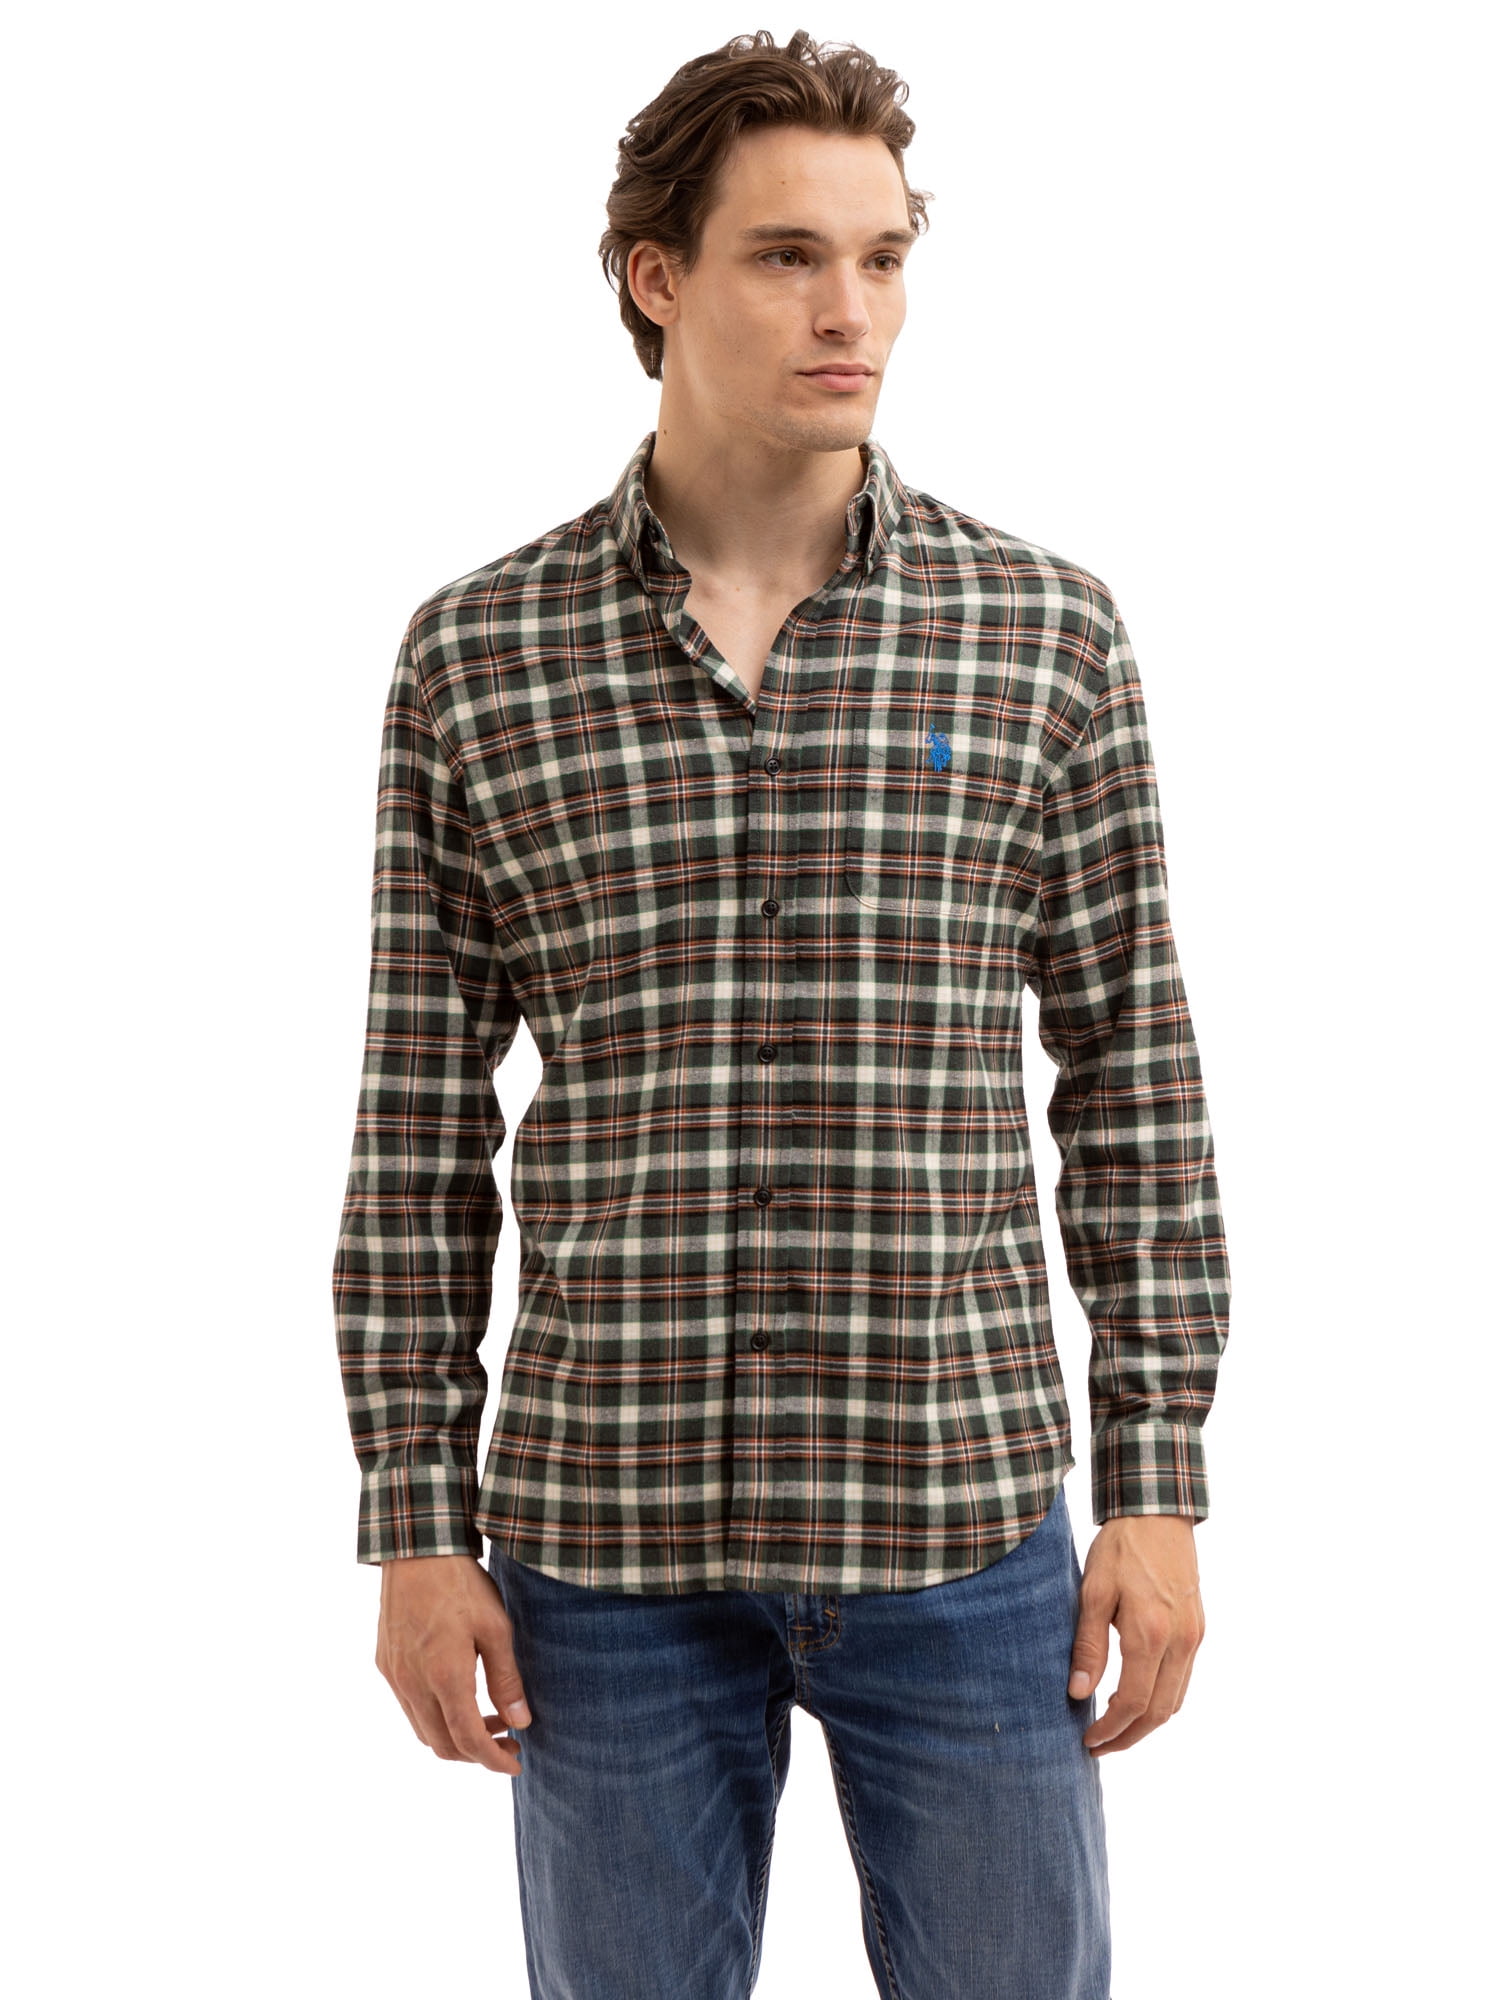 U.S. Polo Assn. Men's Long Sleeve Buttondown Shirt - Walmart.com